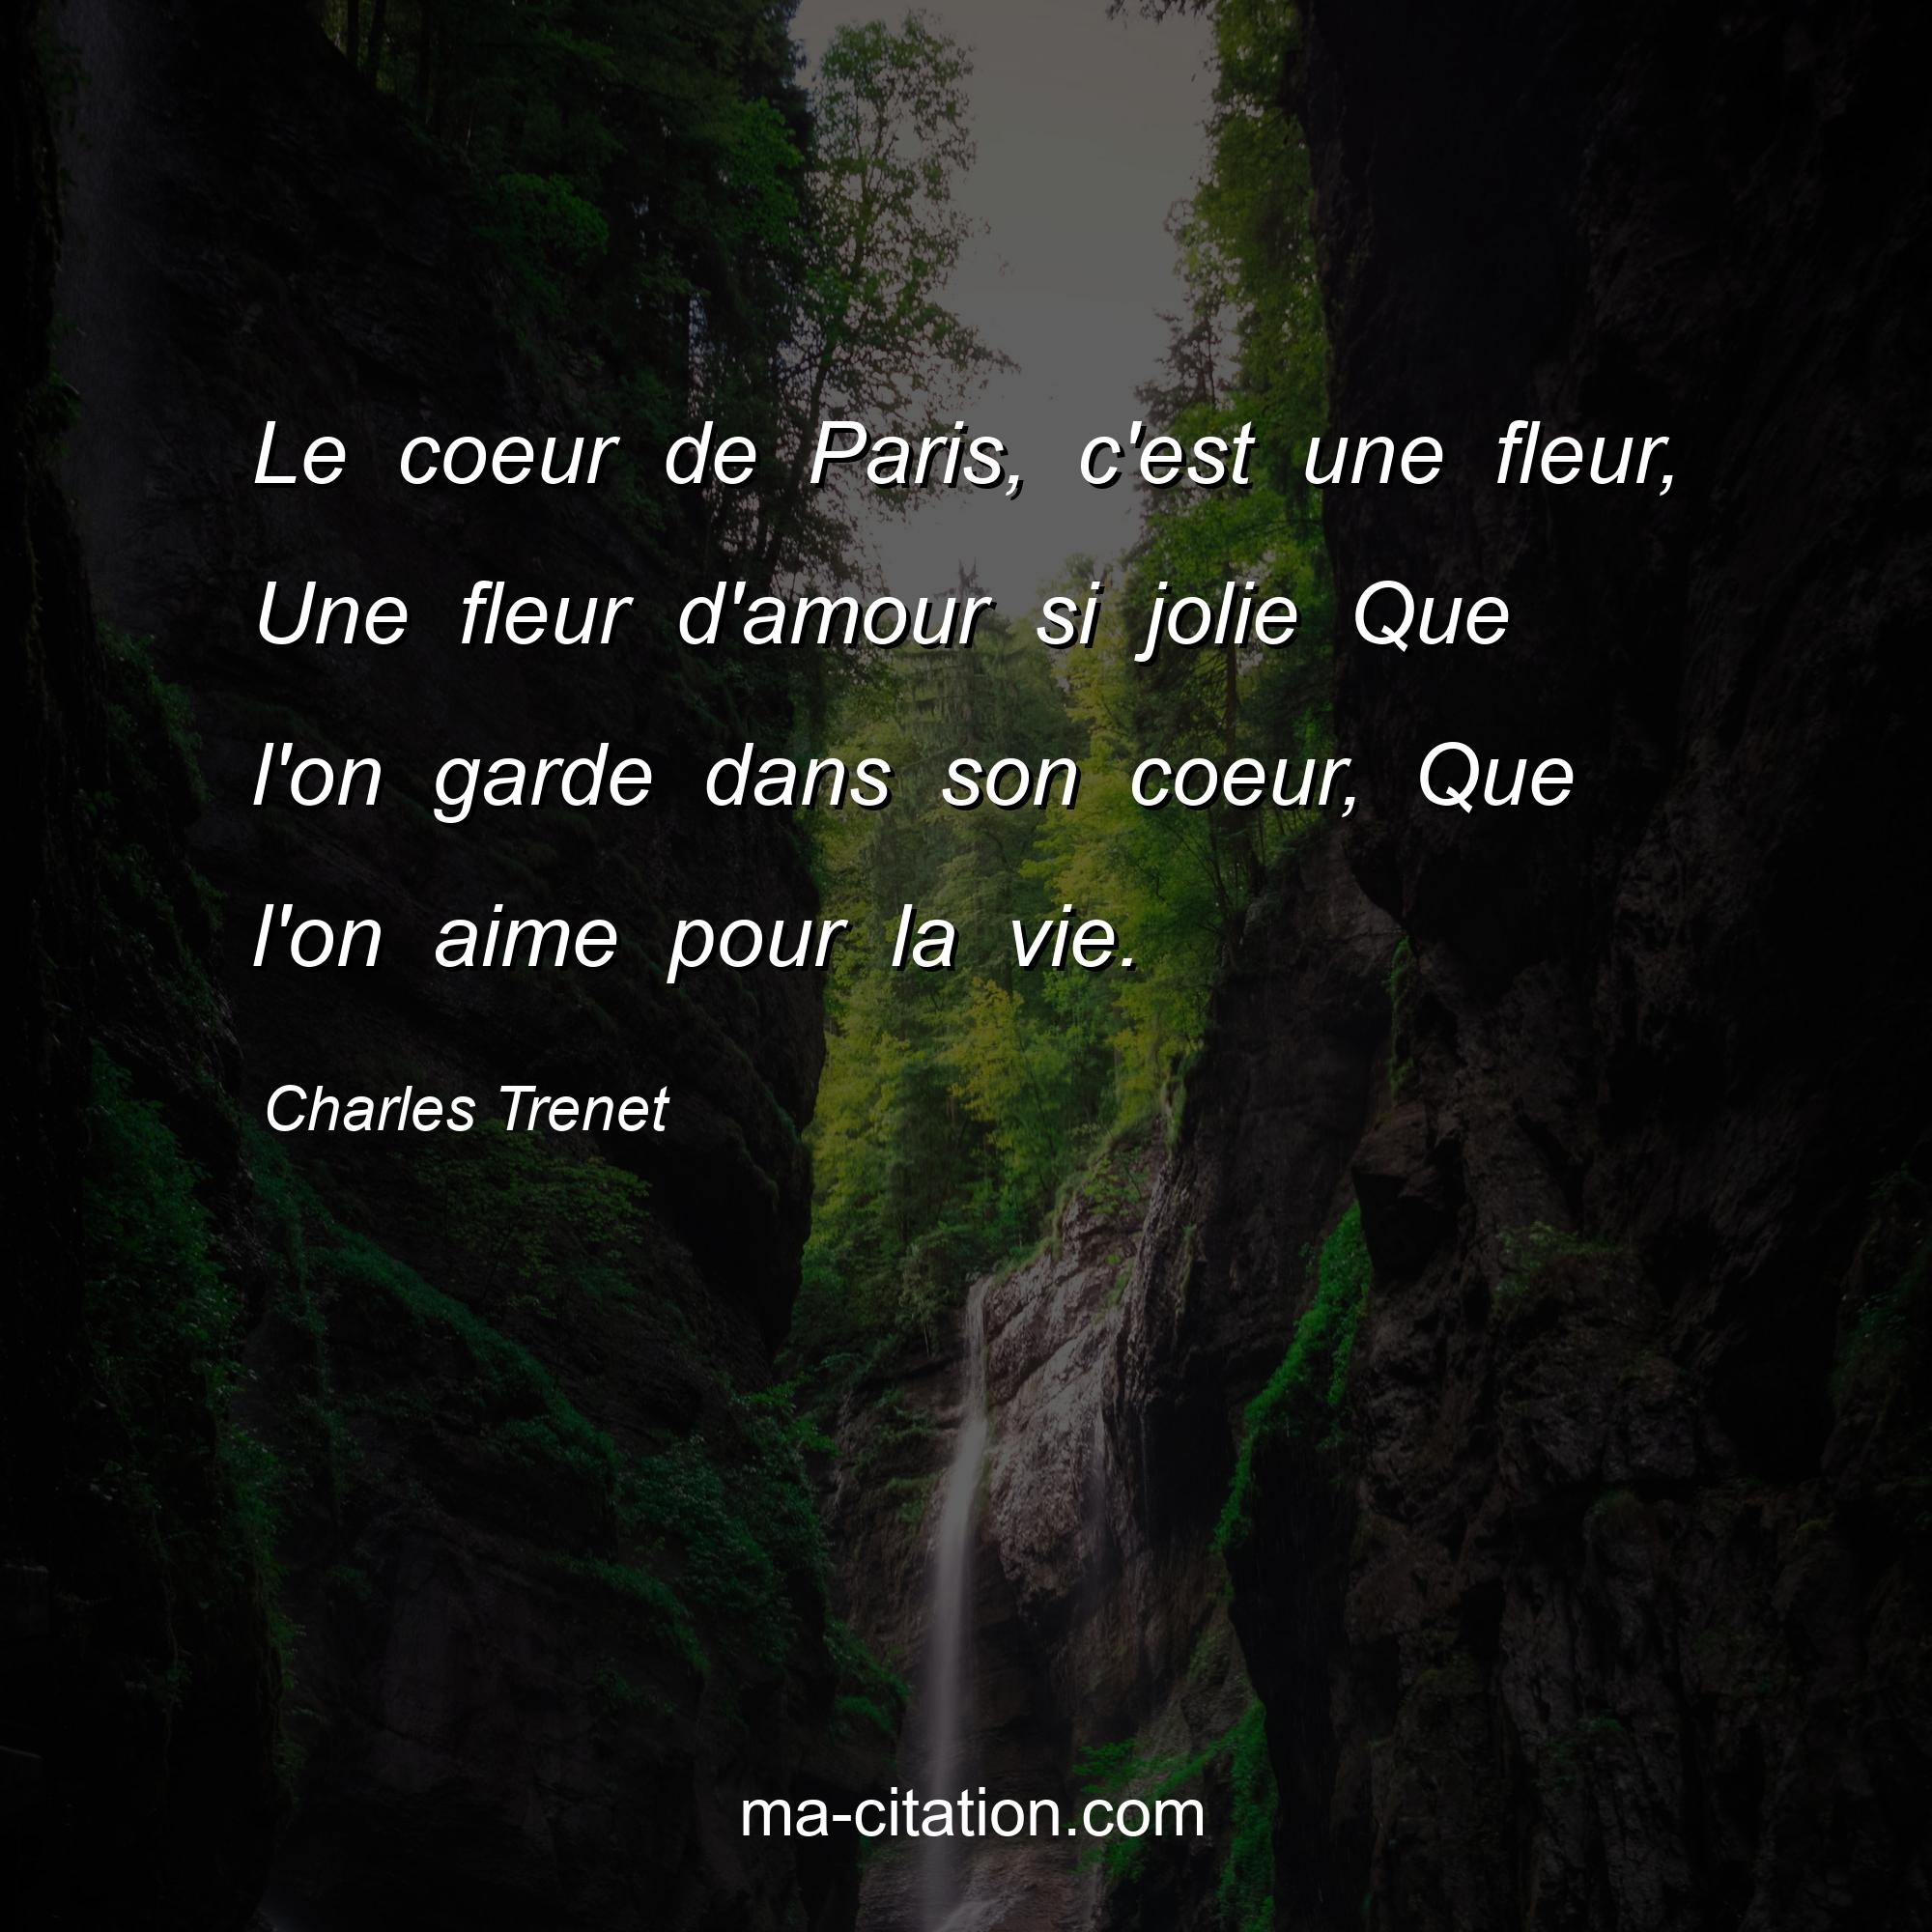 Charles Trenet : Le coeur de Paris, c'est une fleur, Une fleur d'amour si jolie Que l'on garde dans son coeur, Que l'on aime pour la vie.